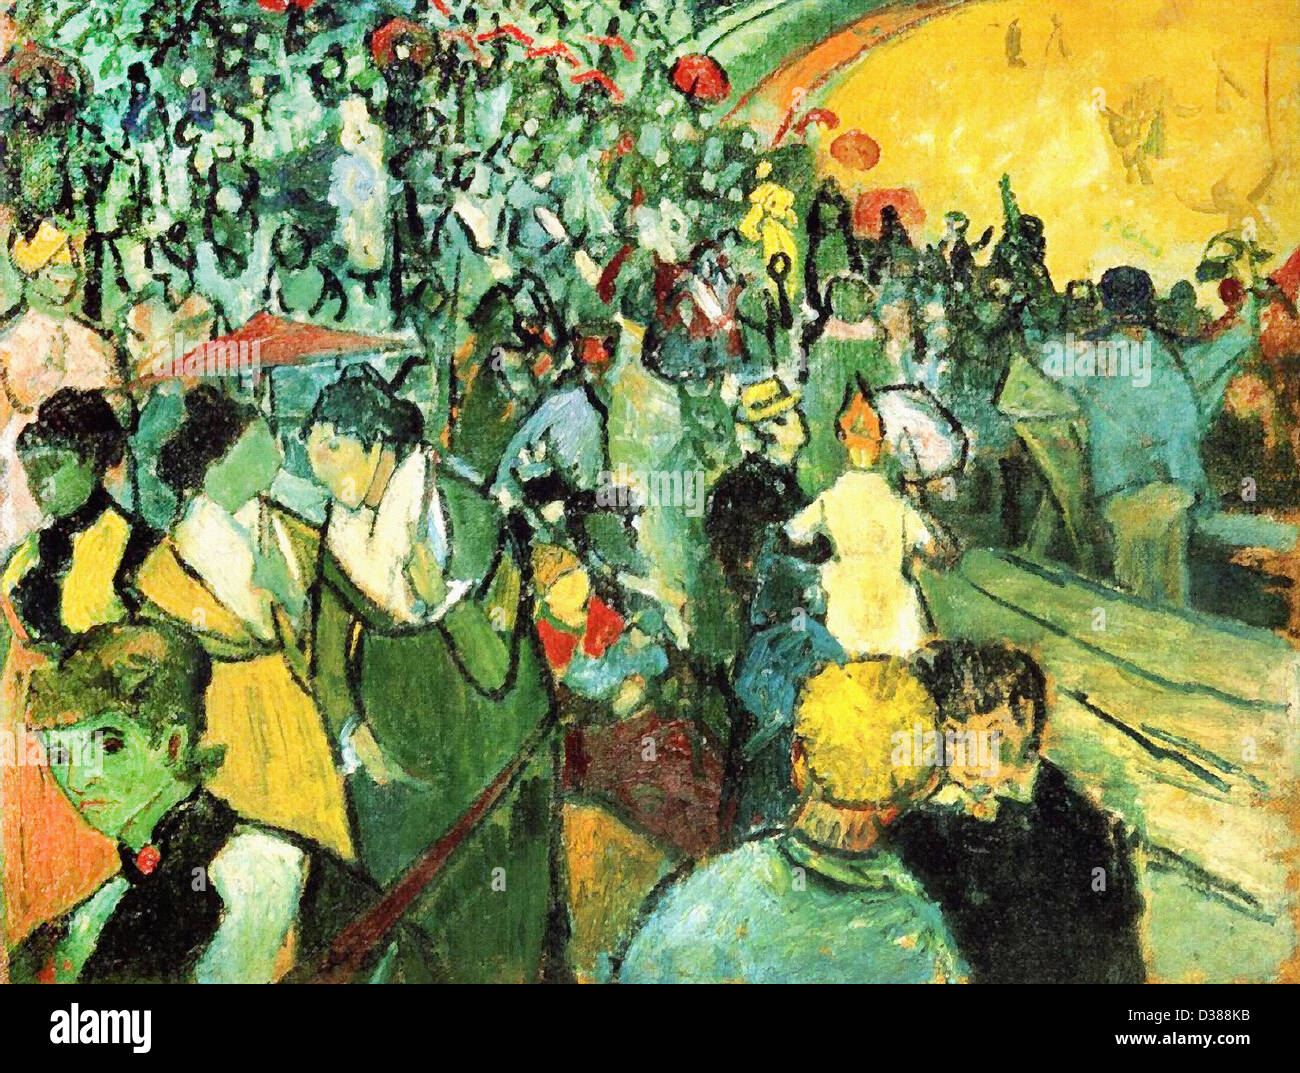 Vincent Van Gogh, Zuschauer in der Arena in Arles. 1888. Cloisonnism. Öl auf Leinwand. Eremitage, St. Petersburg, Russland. Stockfoto